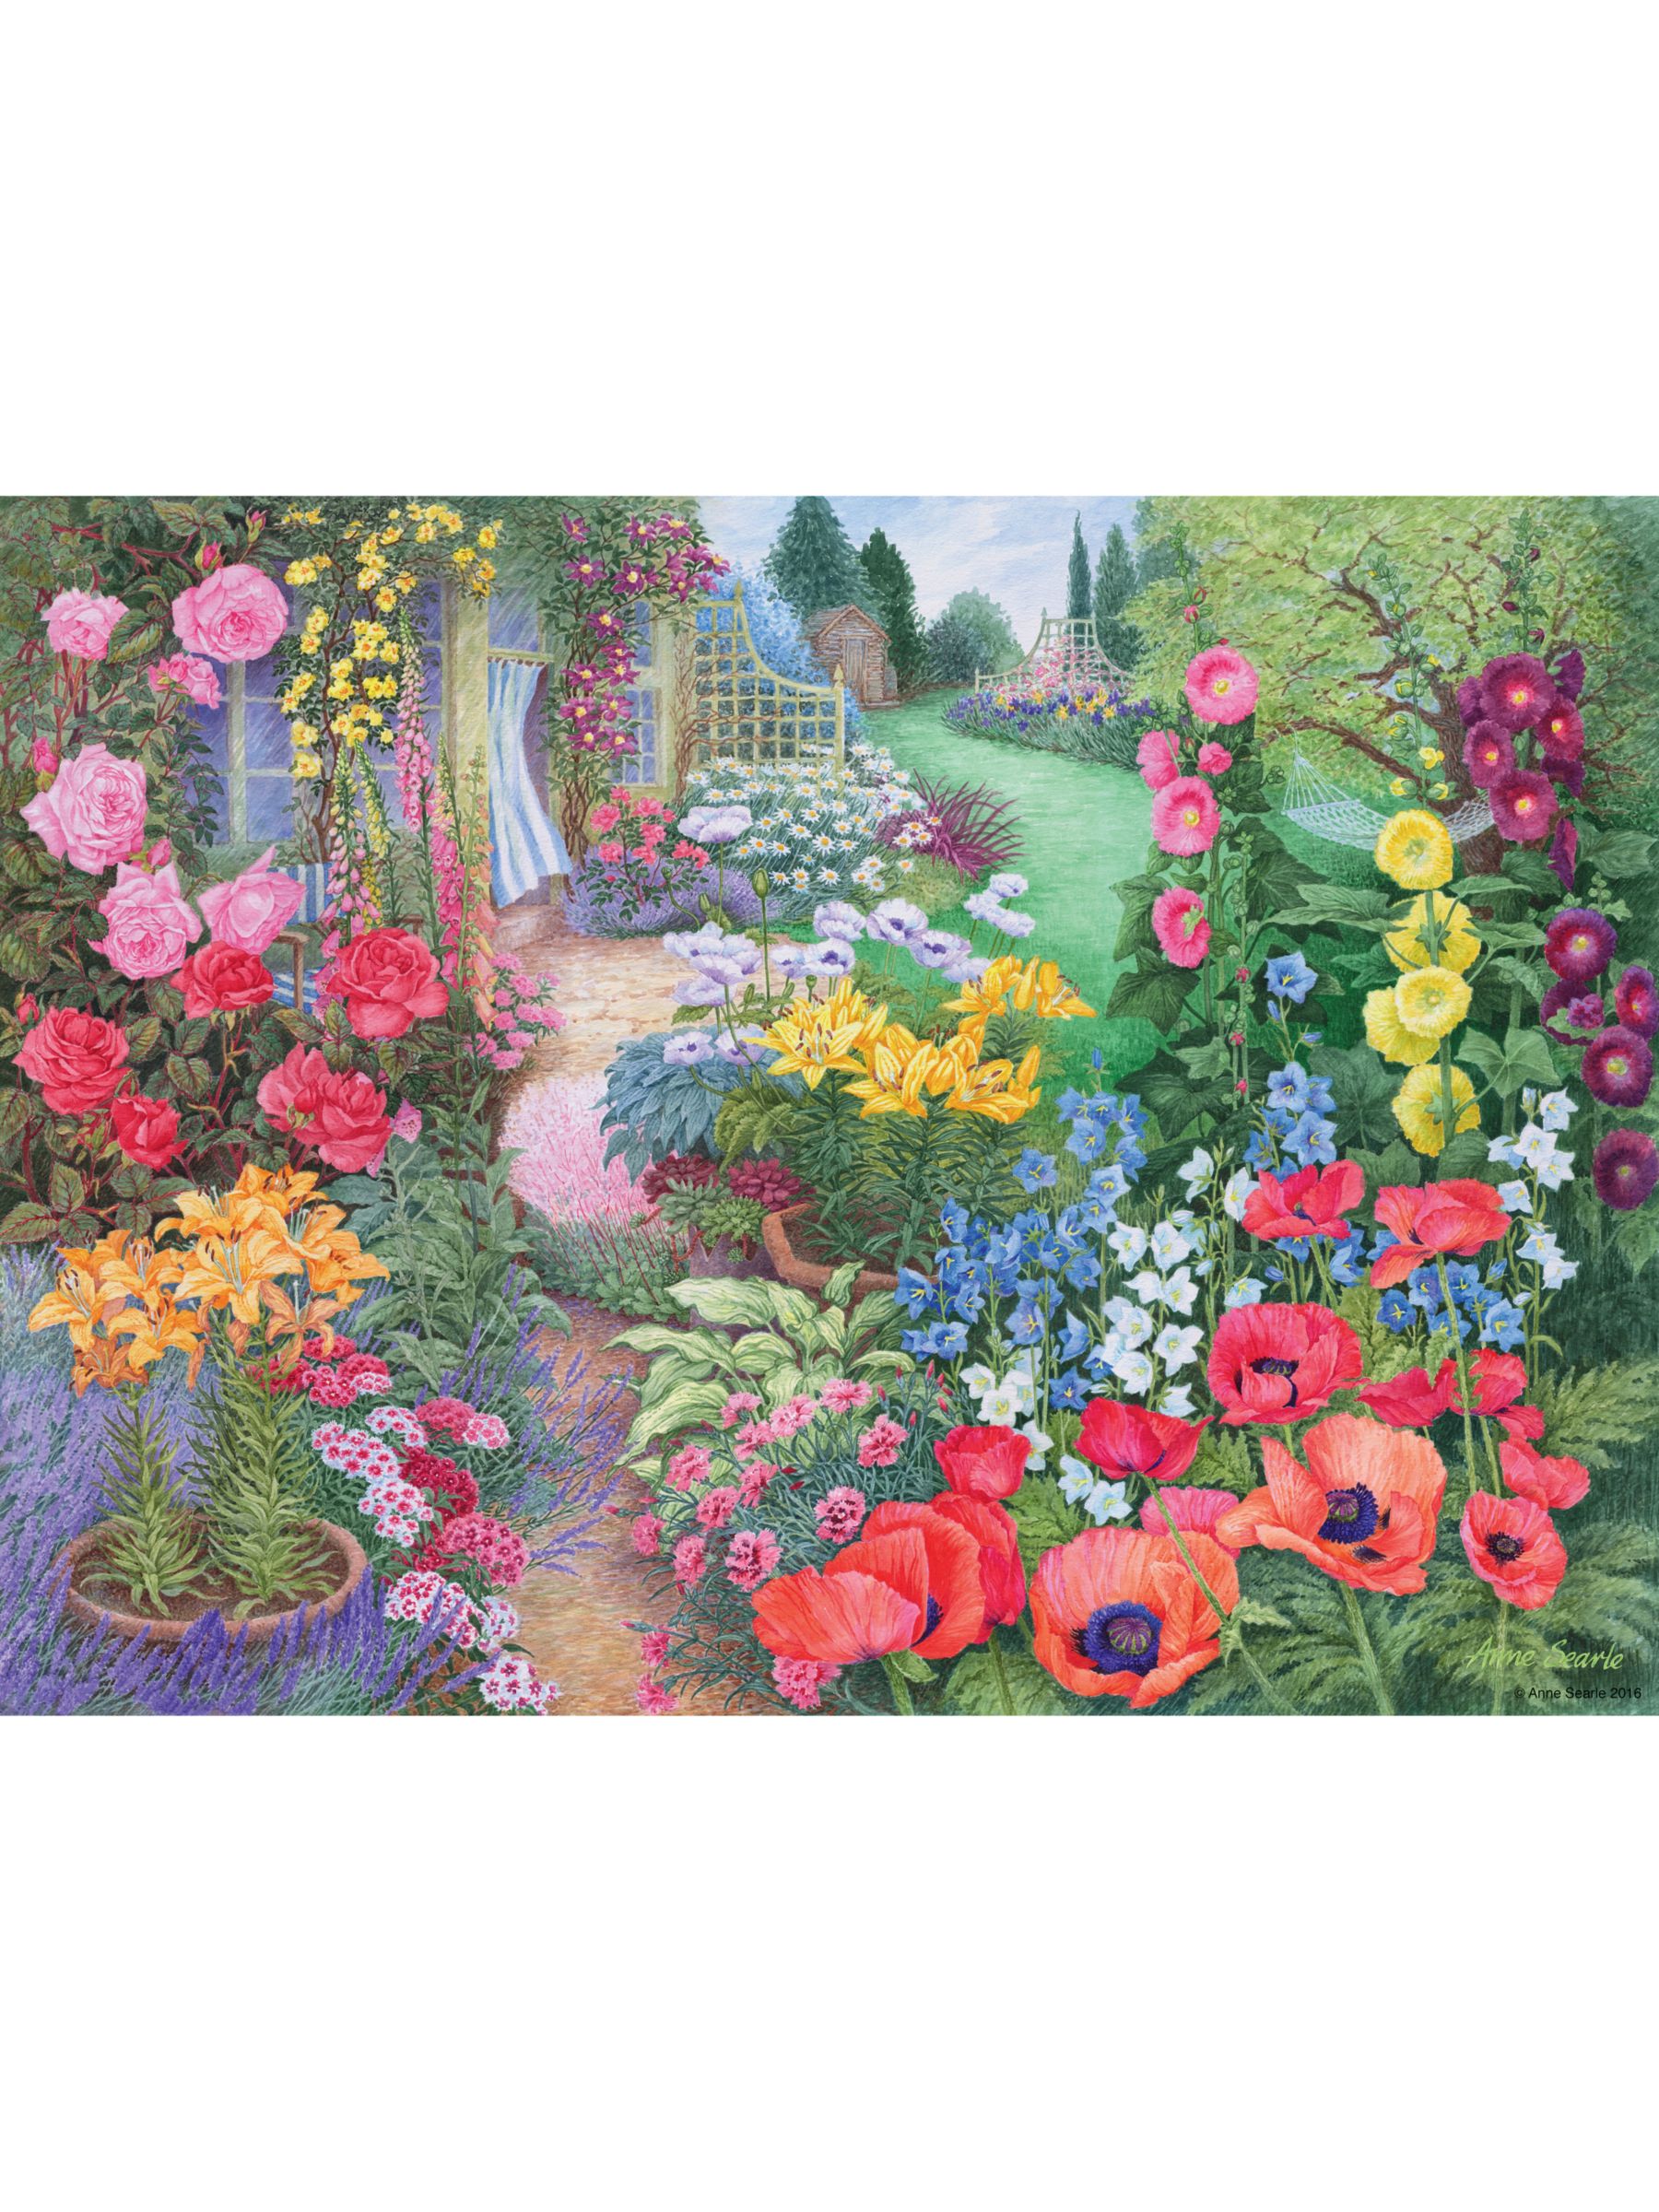 Ravensburger Summer Breeze Garden Jigsaw Puzzle, 500 Pieces